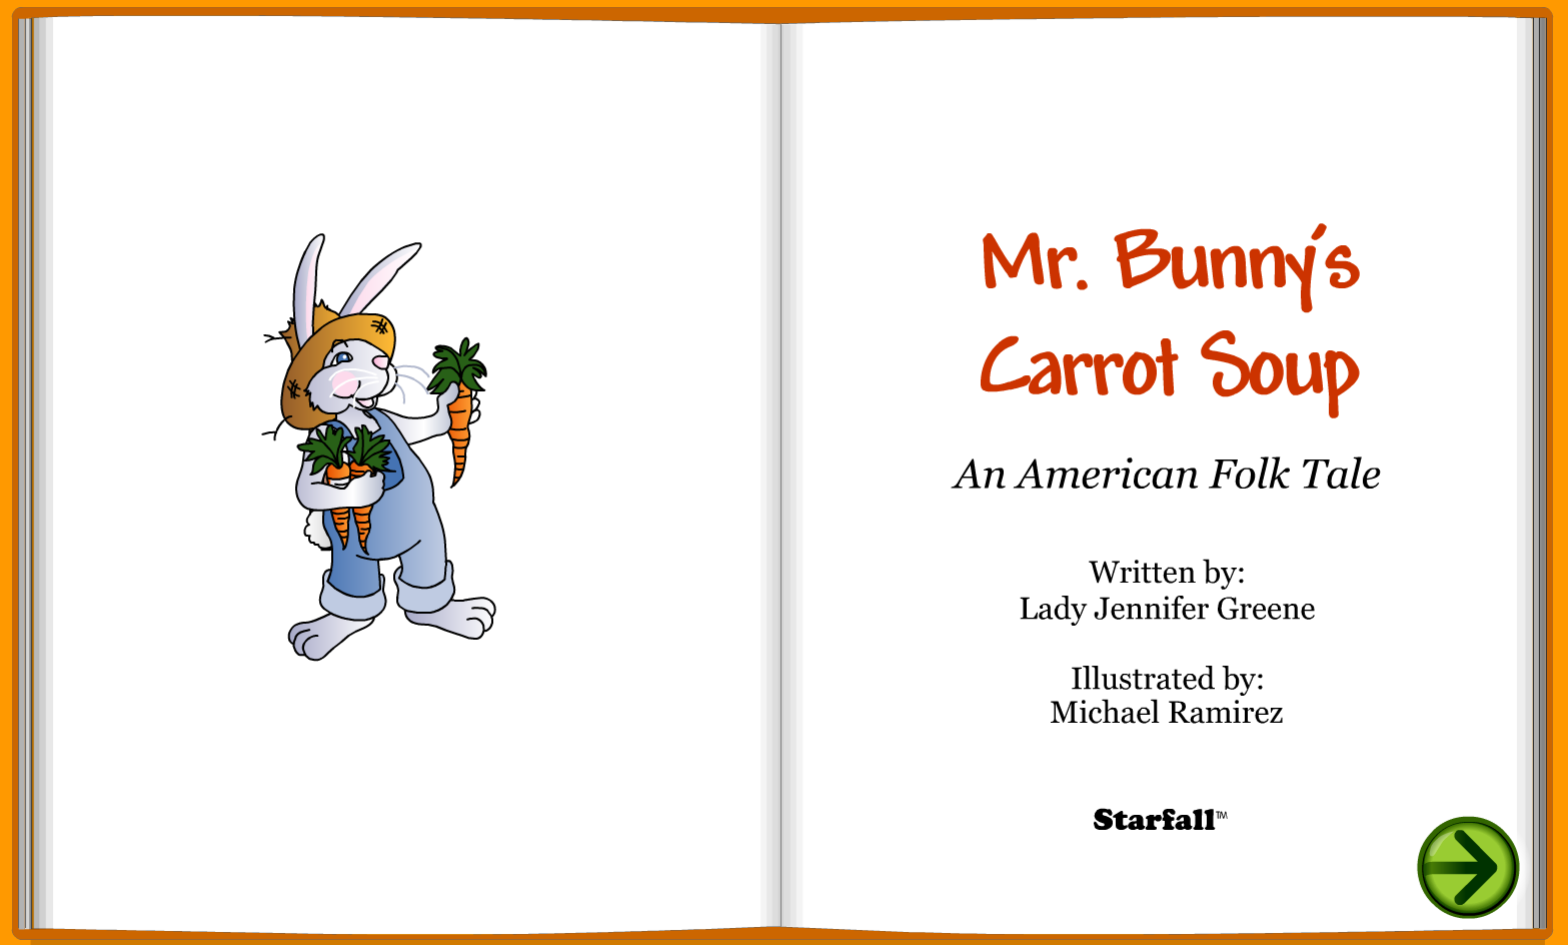 Mr. Bunny's Carrot Soup: An American Folk tale